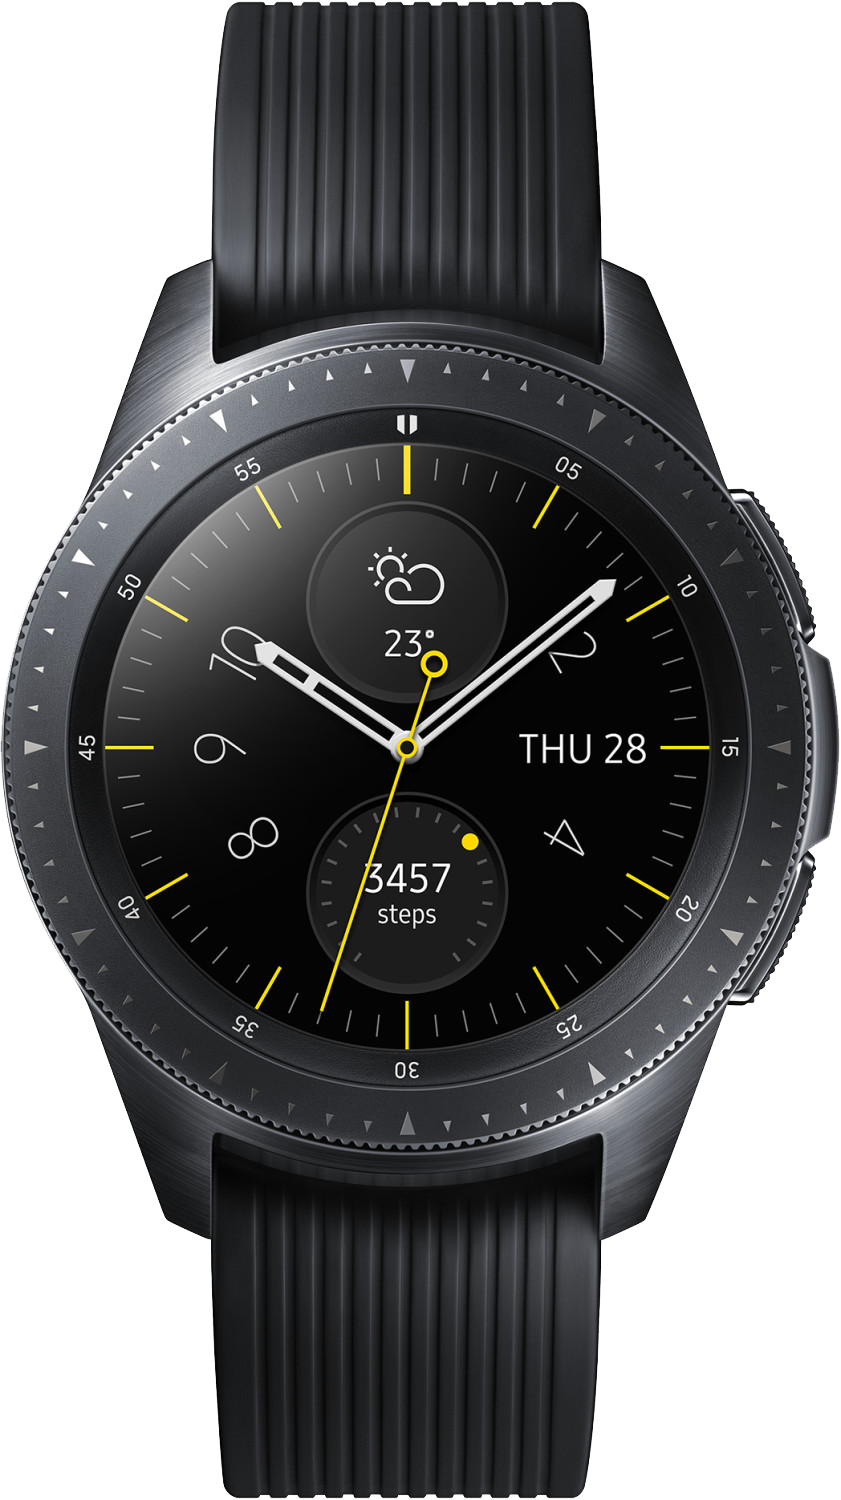 Samsung Galaxy Watch 46mm SM-R800 schwarz - Ohne Vertrag